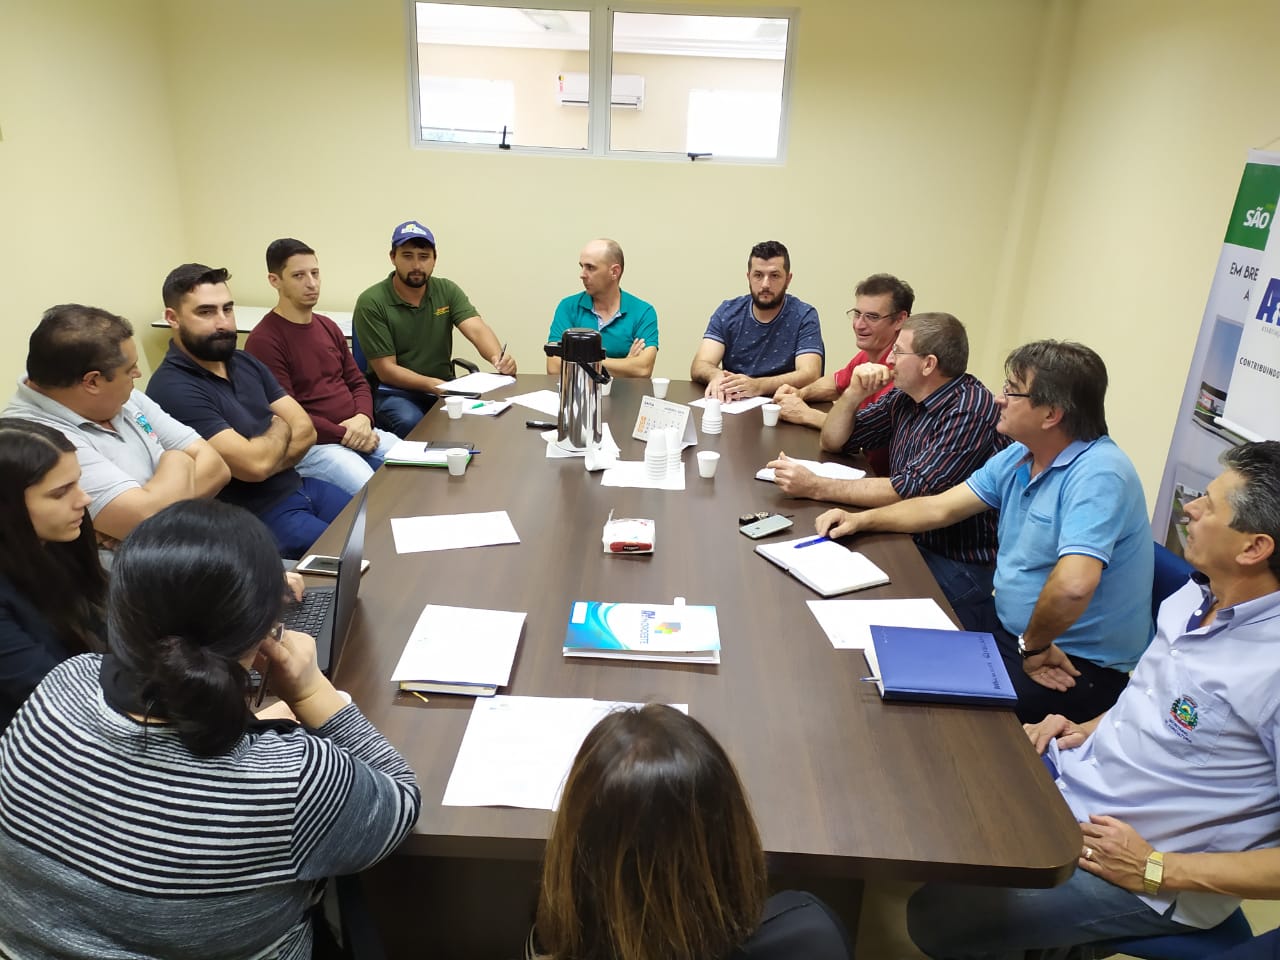 Read more about the article Reunião do Colegiado de Agricultura